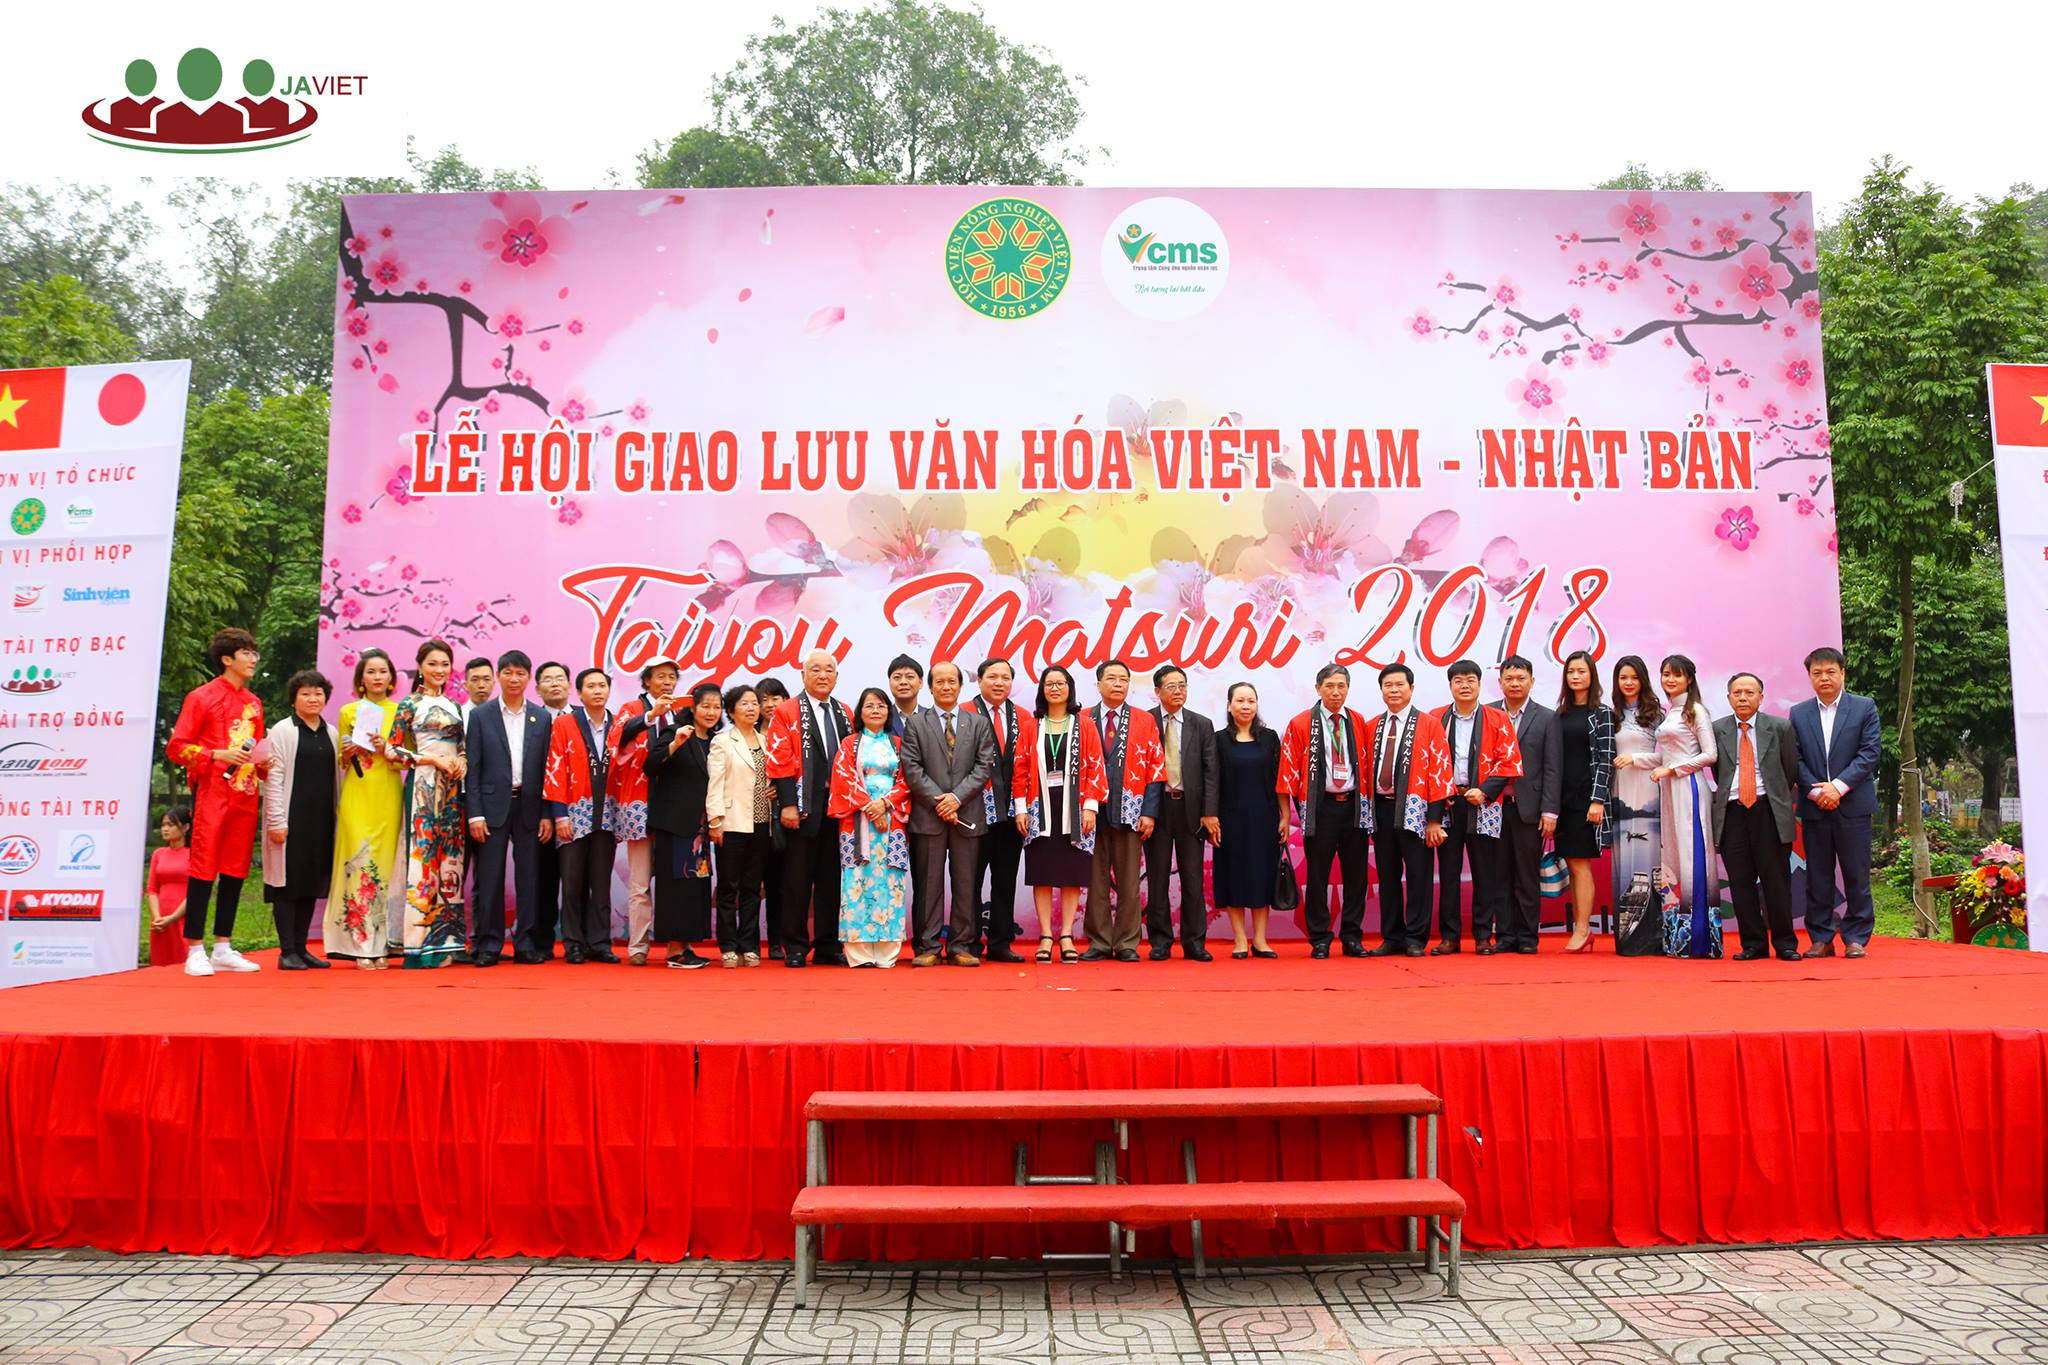  Lễ hội Giao lưu văn hóa Việt Nam Nhật Bản - Taiyou Matsuri 2018